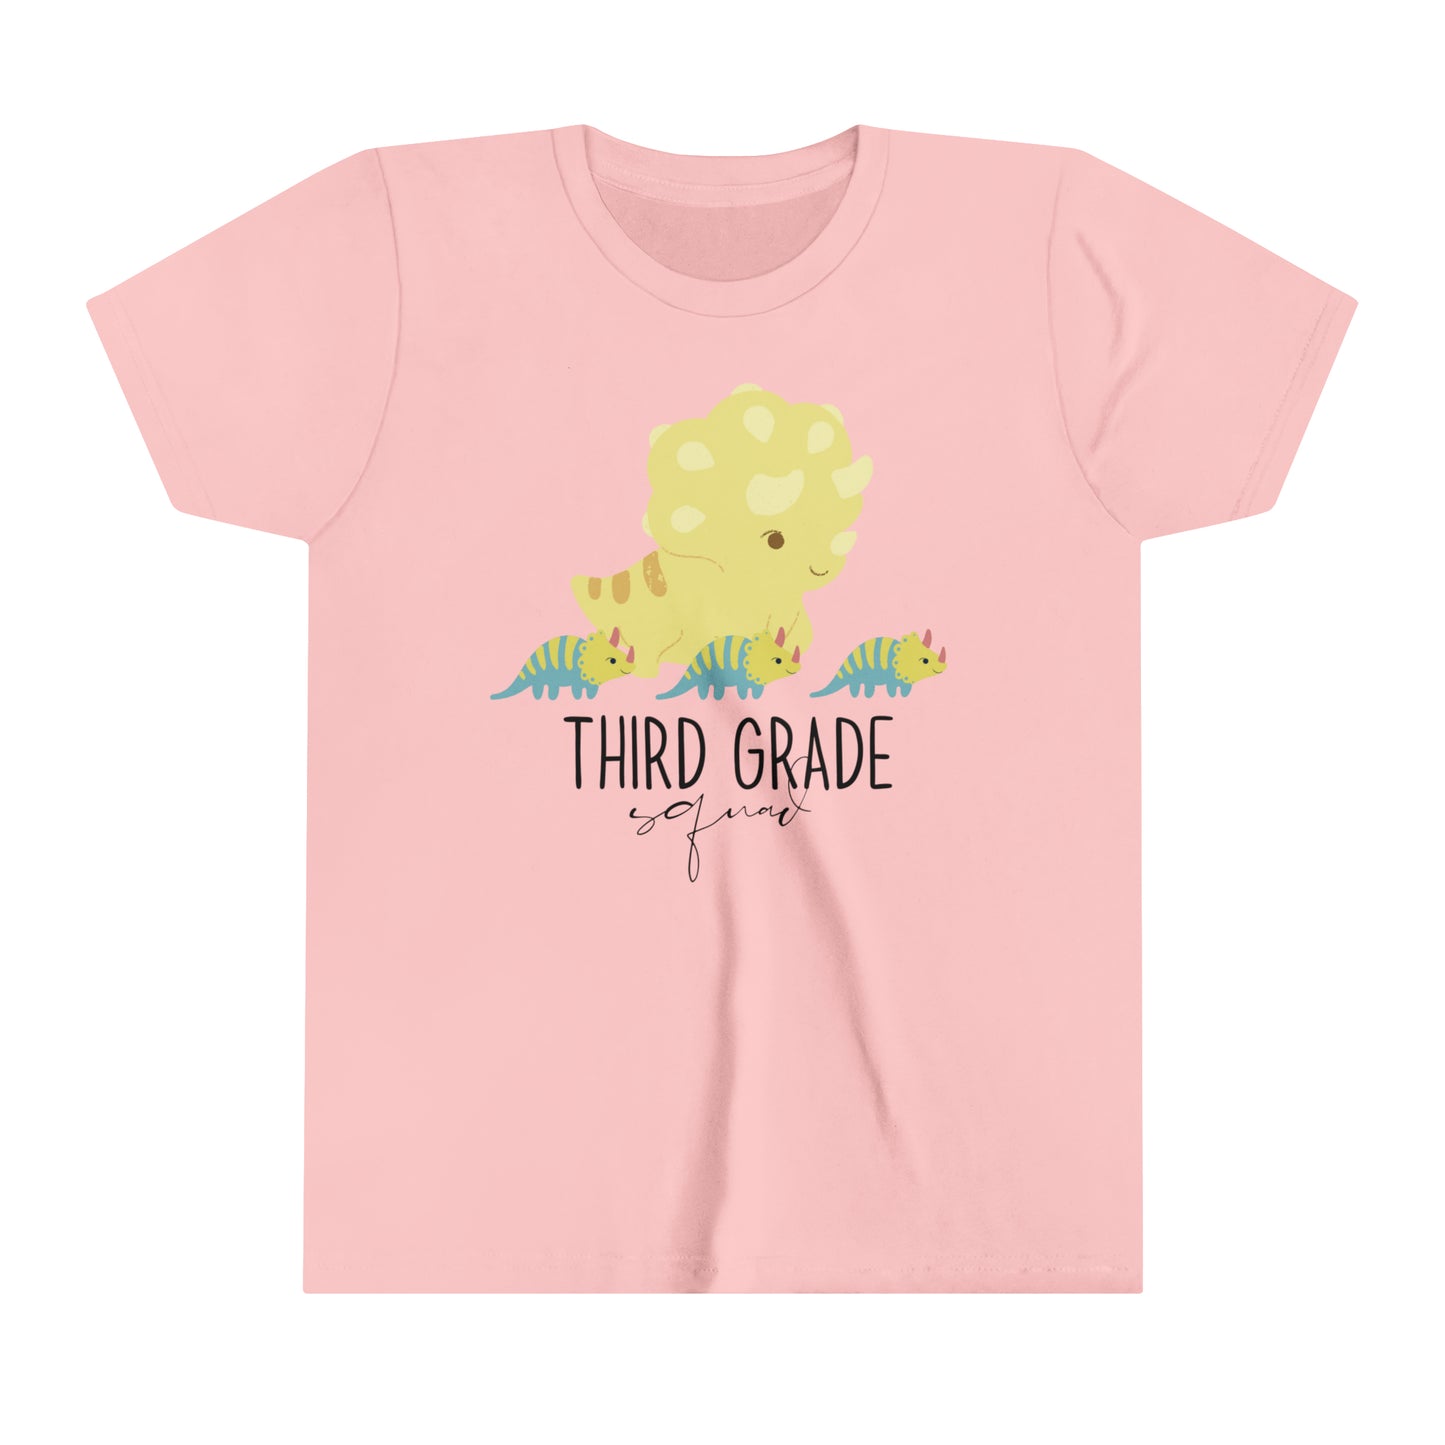 Third Grade girls shirt, Fifth Grade,  Gift for teacher, teacher shirt, back to school shirt, kids shirt, teachers gift, team shirt, team teacher shirt, team shirt,